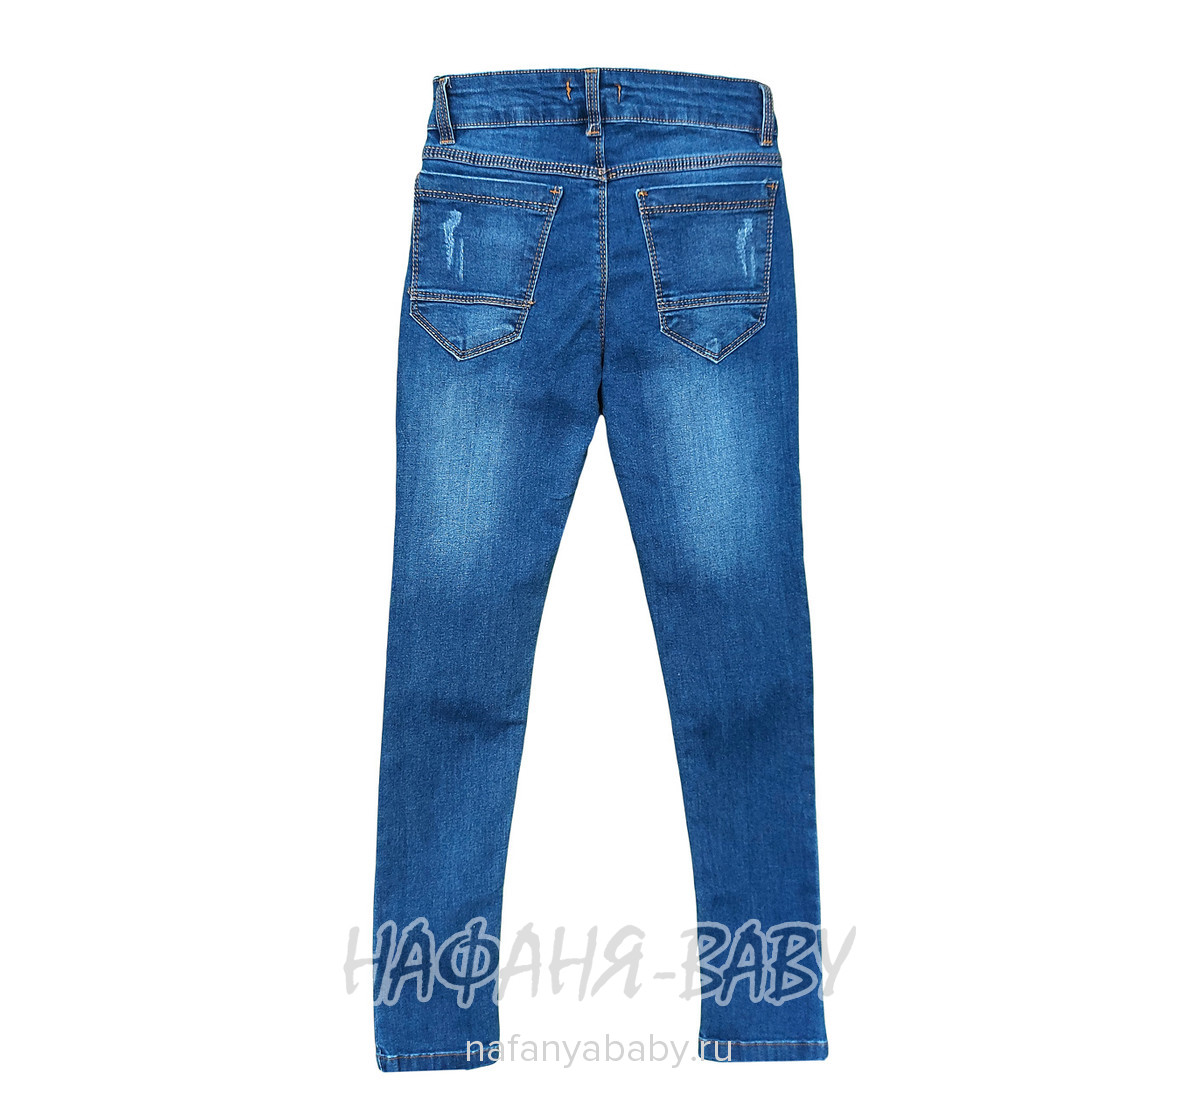 Подростковые джинсы TATI Jeans, купить в интернет магазине Нафаня. арт: 4217.